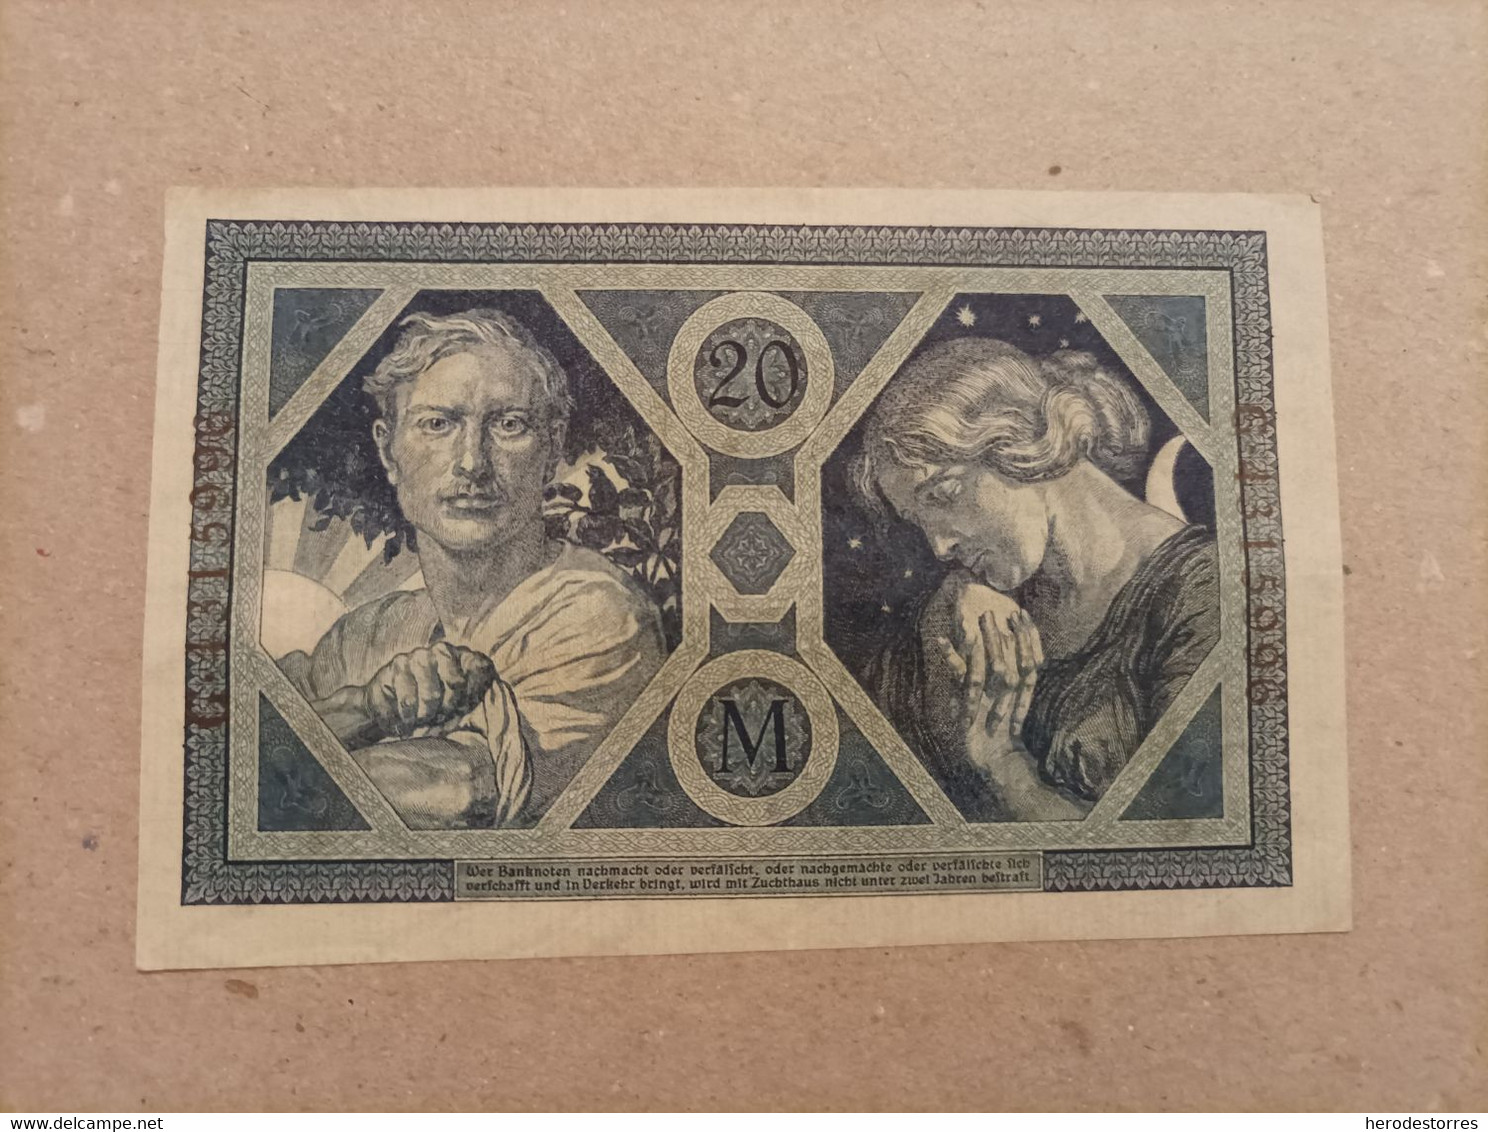 Billete De Alemania De 10 Mark, Año 1918, AUNC - Zu Identifizieren